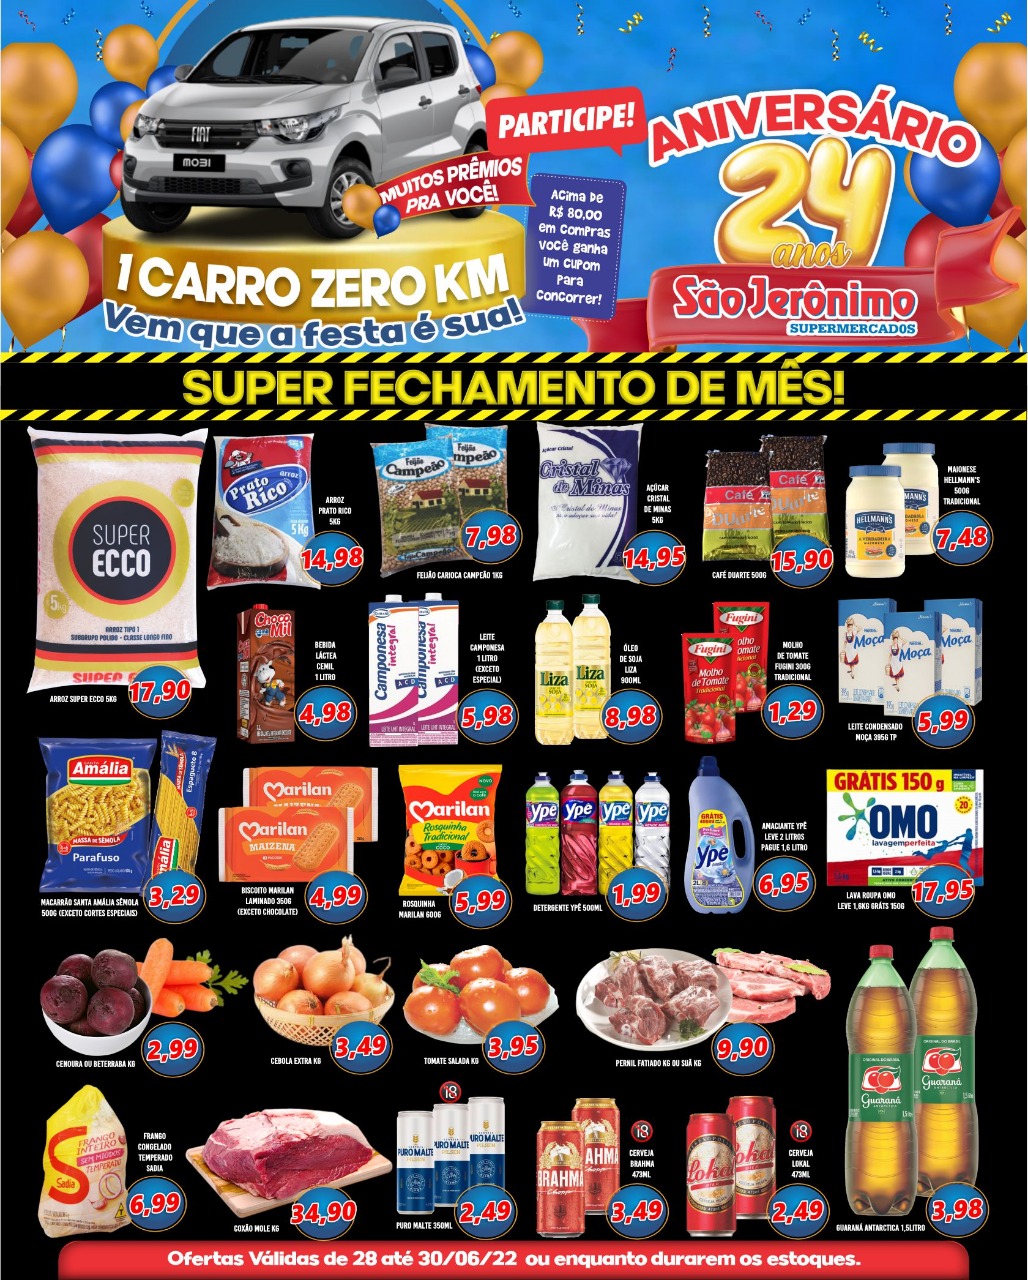 São Jerônimo - Ofertas da Semana Supermercados Passos MG / Jornal de Ofertas Supermercados Passos.